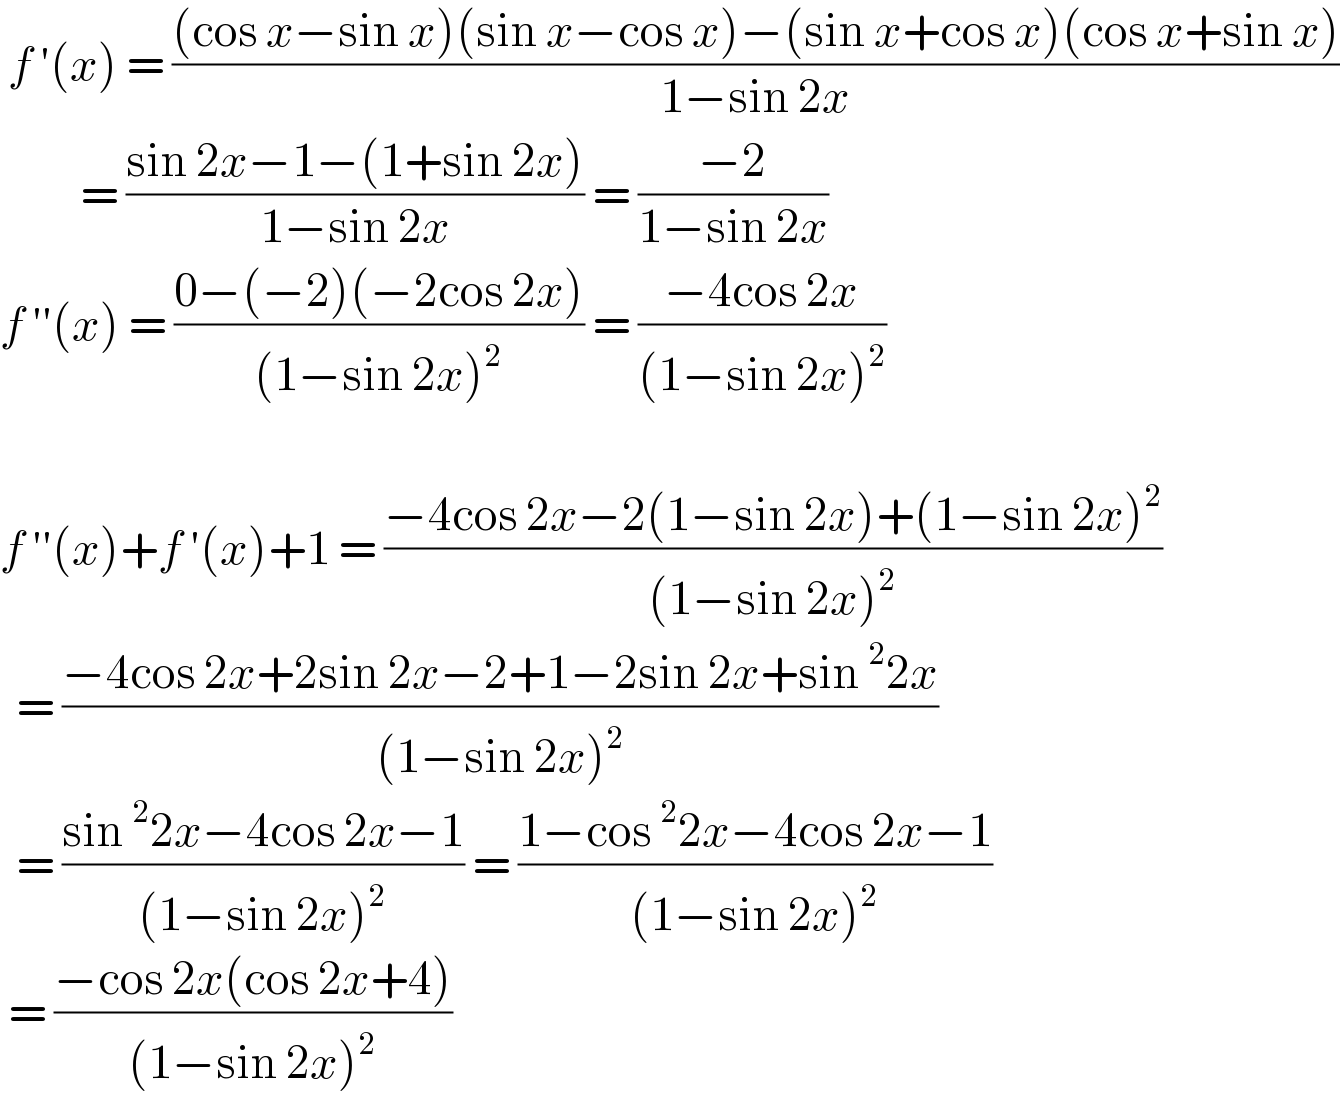  f ′(x) = (((cos x−sin x)(sin x−cos x)−(sin x+cos x)(cos x+sin x))/(1−sin 2x))            = ((sin 2x−1−(1+sin 2x))/(1−sin 2x)) = ((−2)/(1−sin 2x))  f ′′(x) = ((0−(−2)(−2cos 2x))/((1−sin 2x)^2 )) = ((−4cos 2x)/((1−sin 2x)^2 ))    f ′′(x)+f ′(x)+1 = ((−4cos 2x−2(1−sin 2x)+(1−sin 2x)^2 )/((1−sin 2x)^2 ))    = ((−4cos 2x+2sin 2x−2+1−2sin 2x+sin^2 2x)/((1−sin 2x)^2 ))    = ((sin^2 2x−4cos 2x−1)/((1−sin 2x)^2 )) = ((1−cos^2 2x−4cos 2x−1)/((1−sin 2x)^2 ))   = ((−cos 2x(cos 2x+4))/((1−sin 2x)^2 ))   